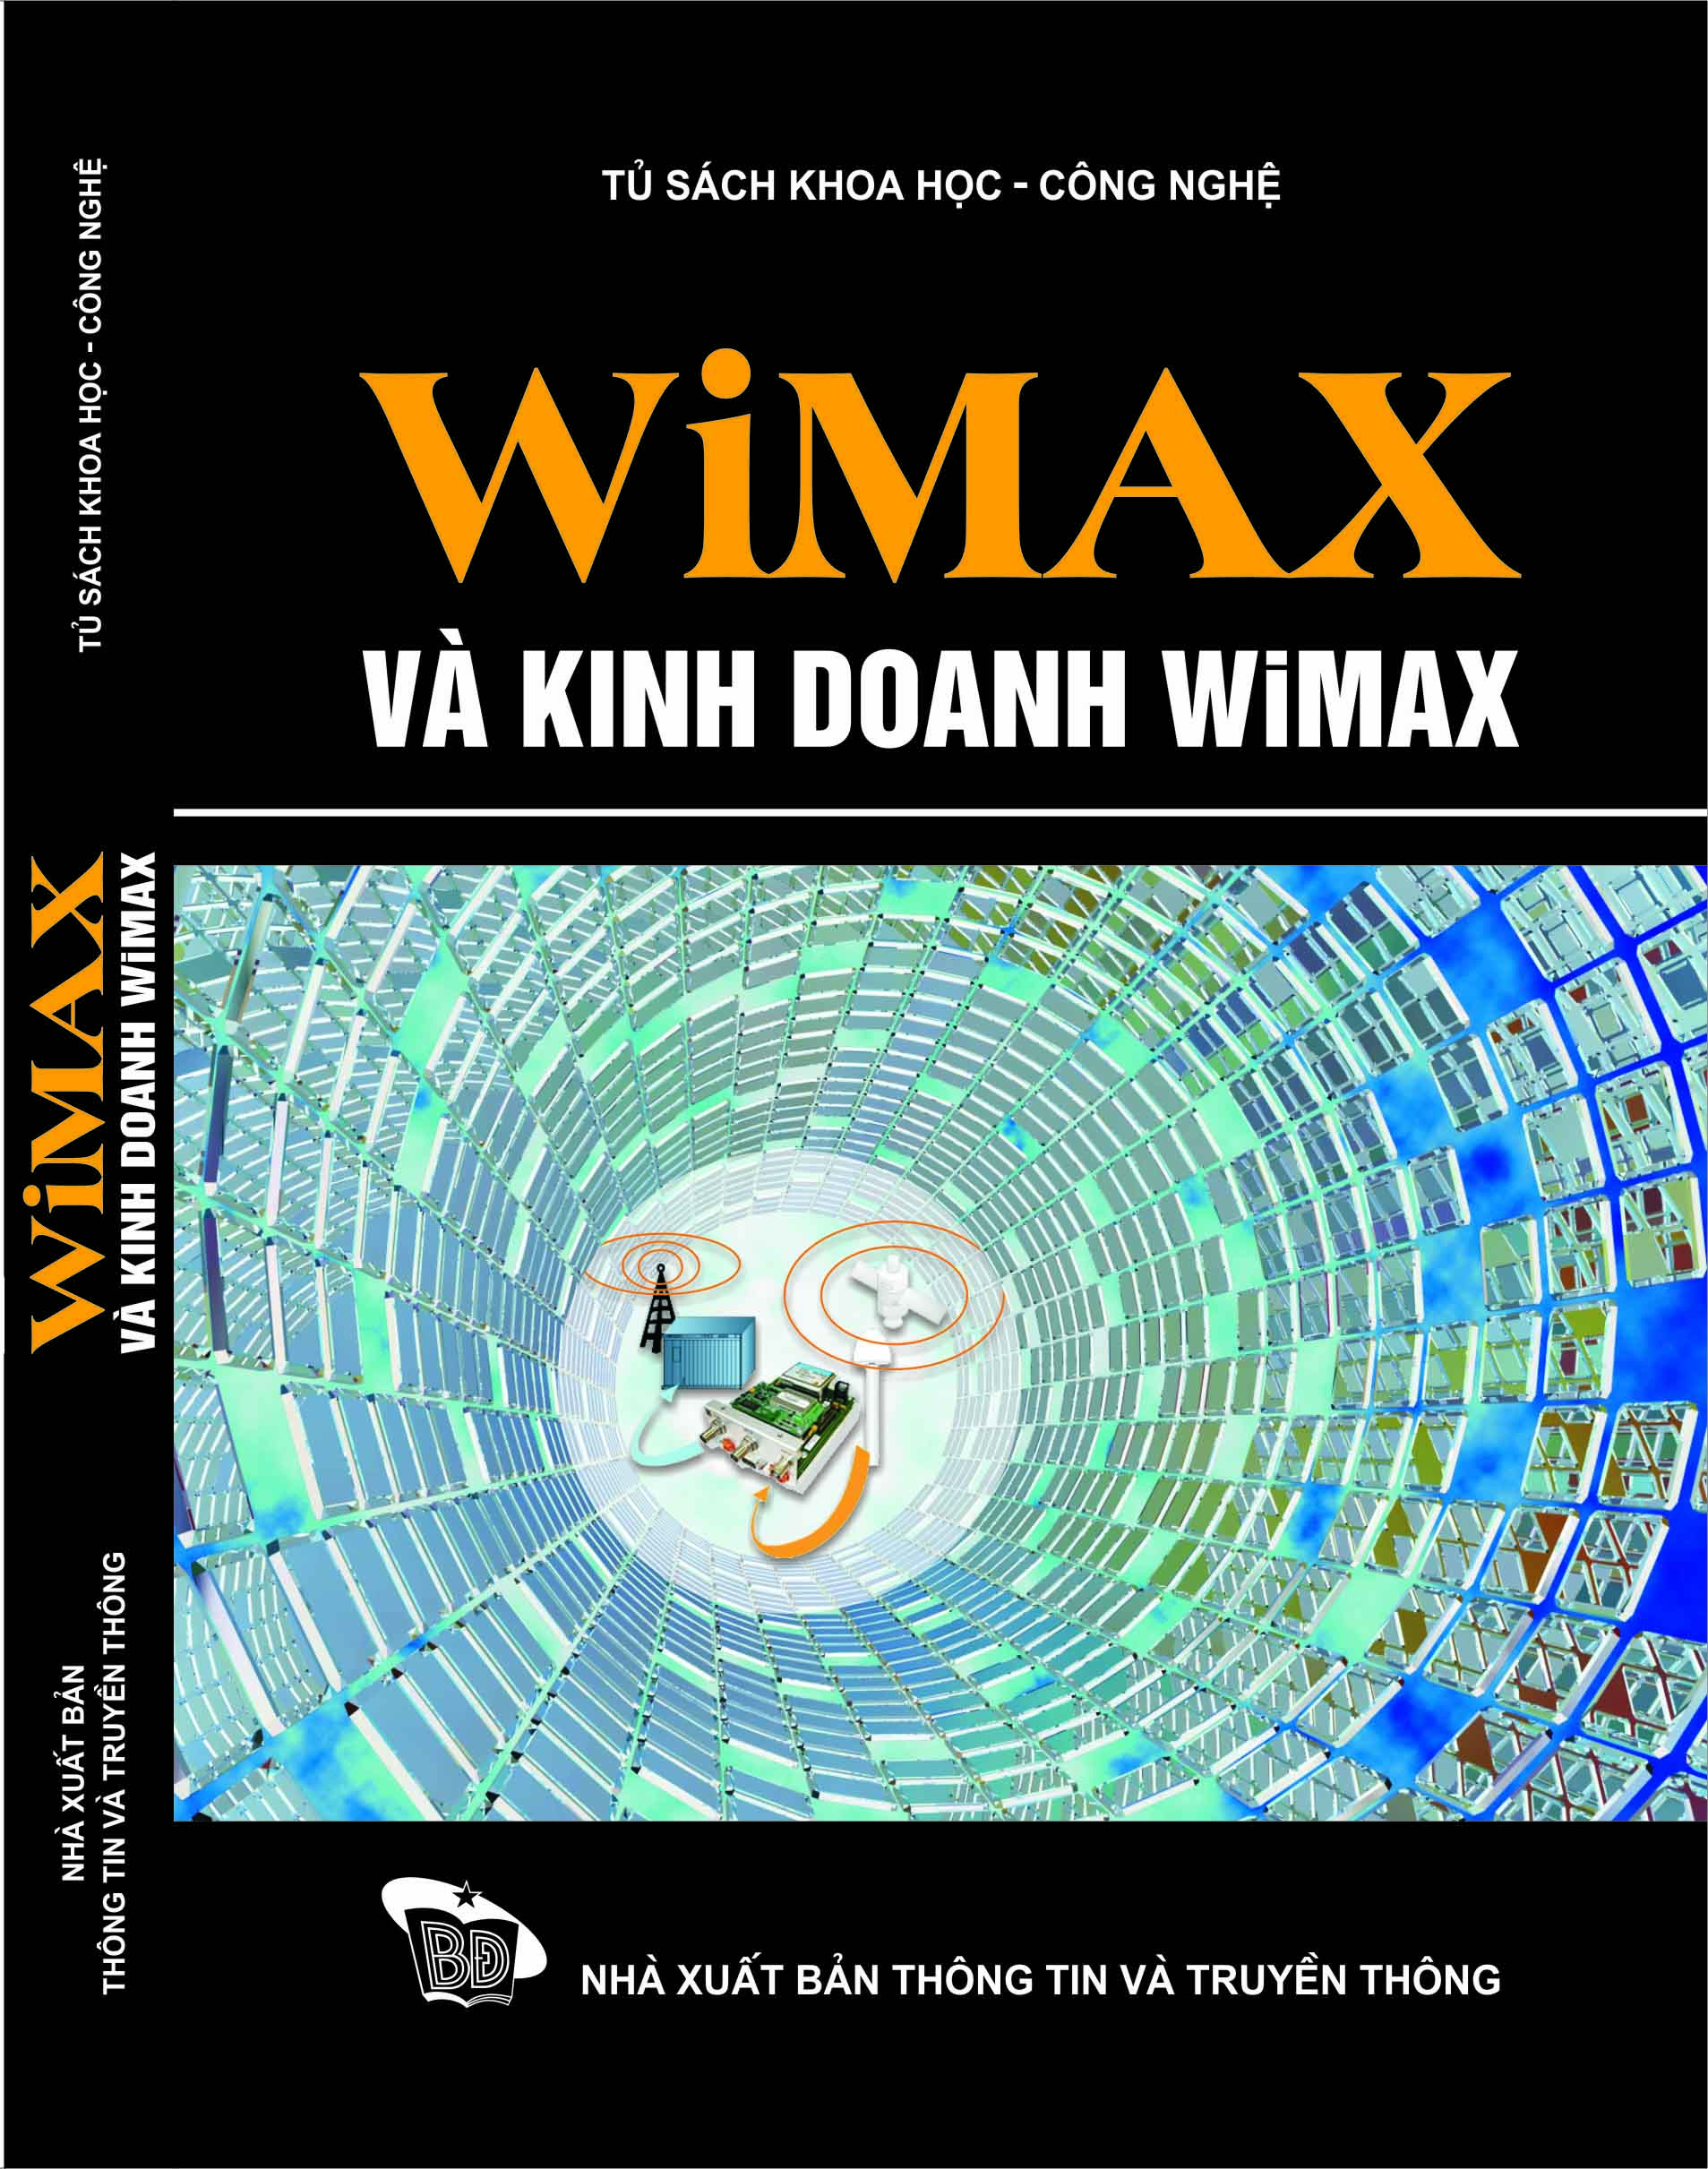 Sách khoa học công nghệ "WiMAX và kinh doanh WiMAX"